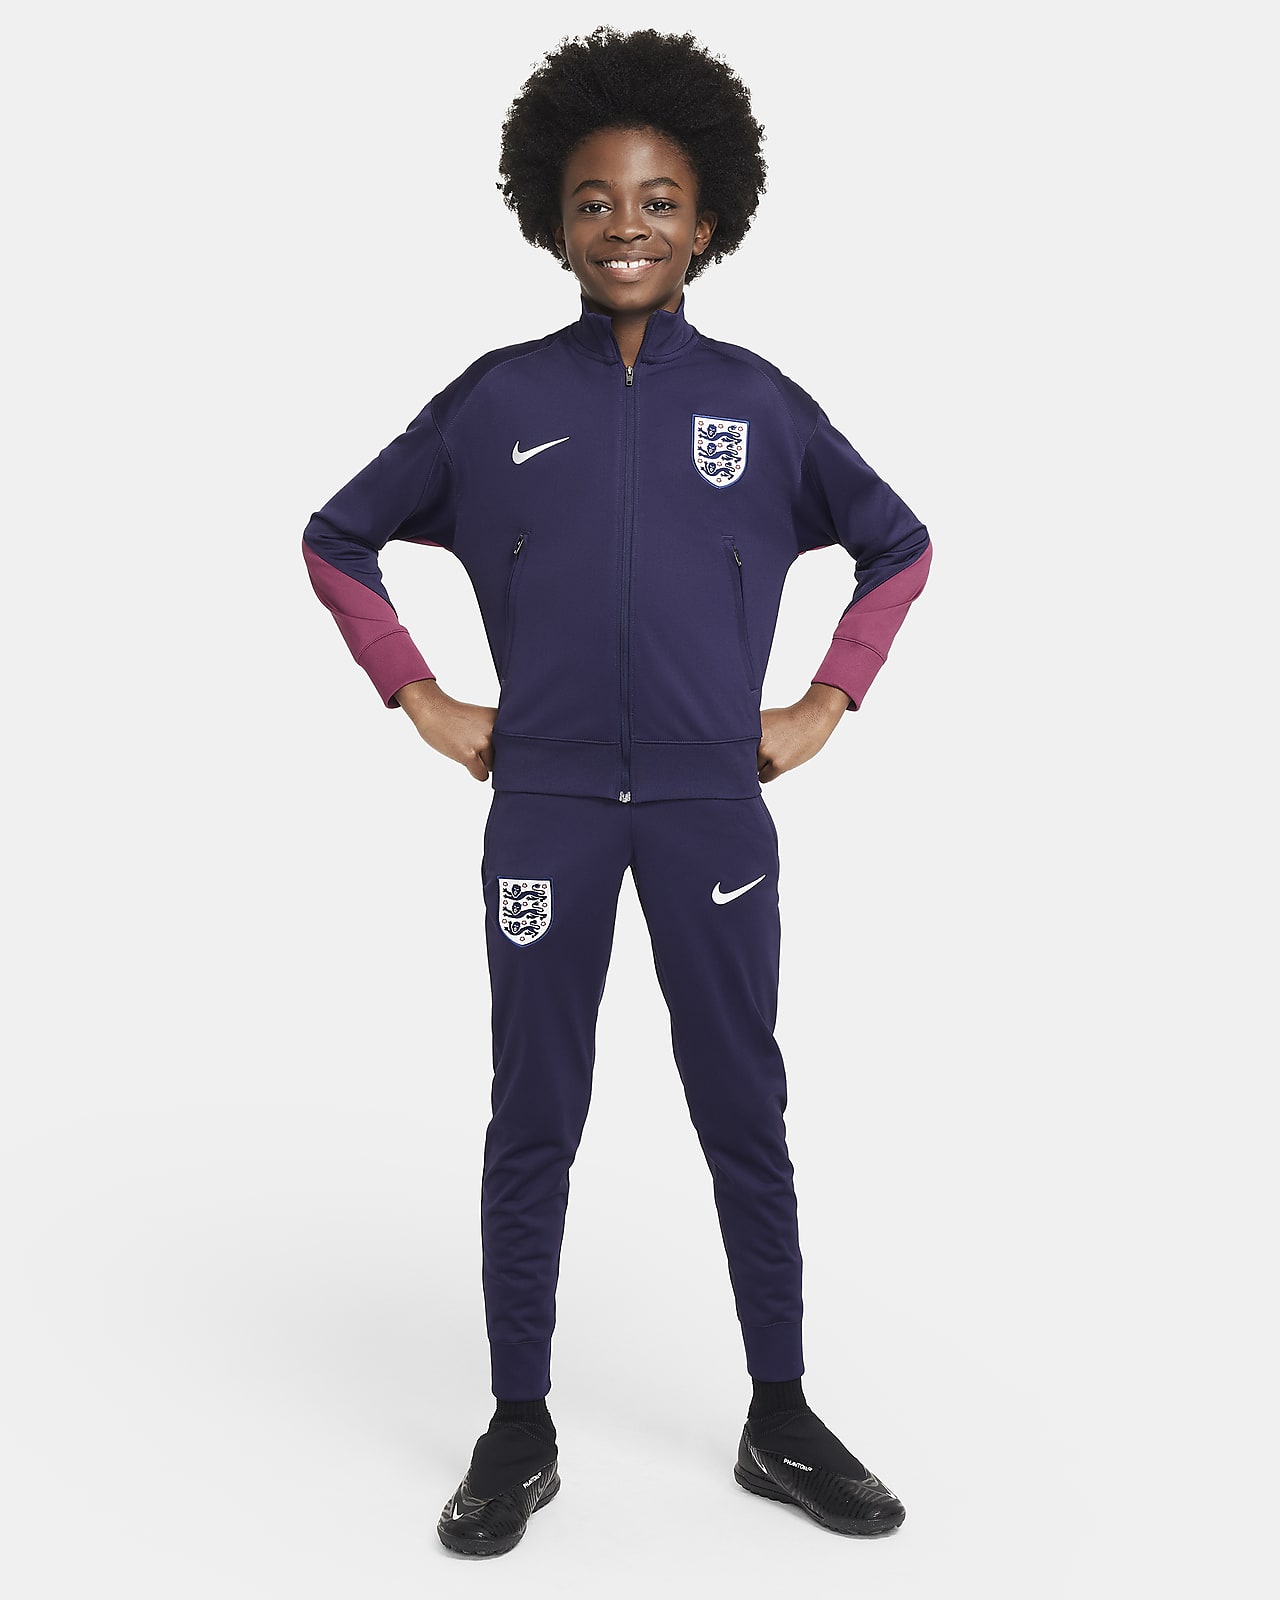 Pleteninové fotbalová tepláková souprava Nike Dri-FIT Anglie Strike pro větší děti